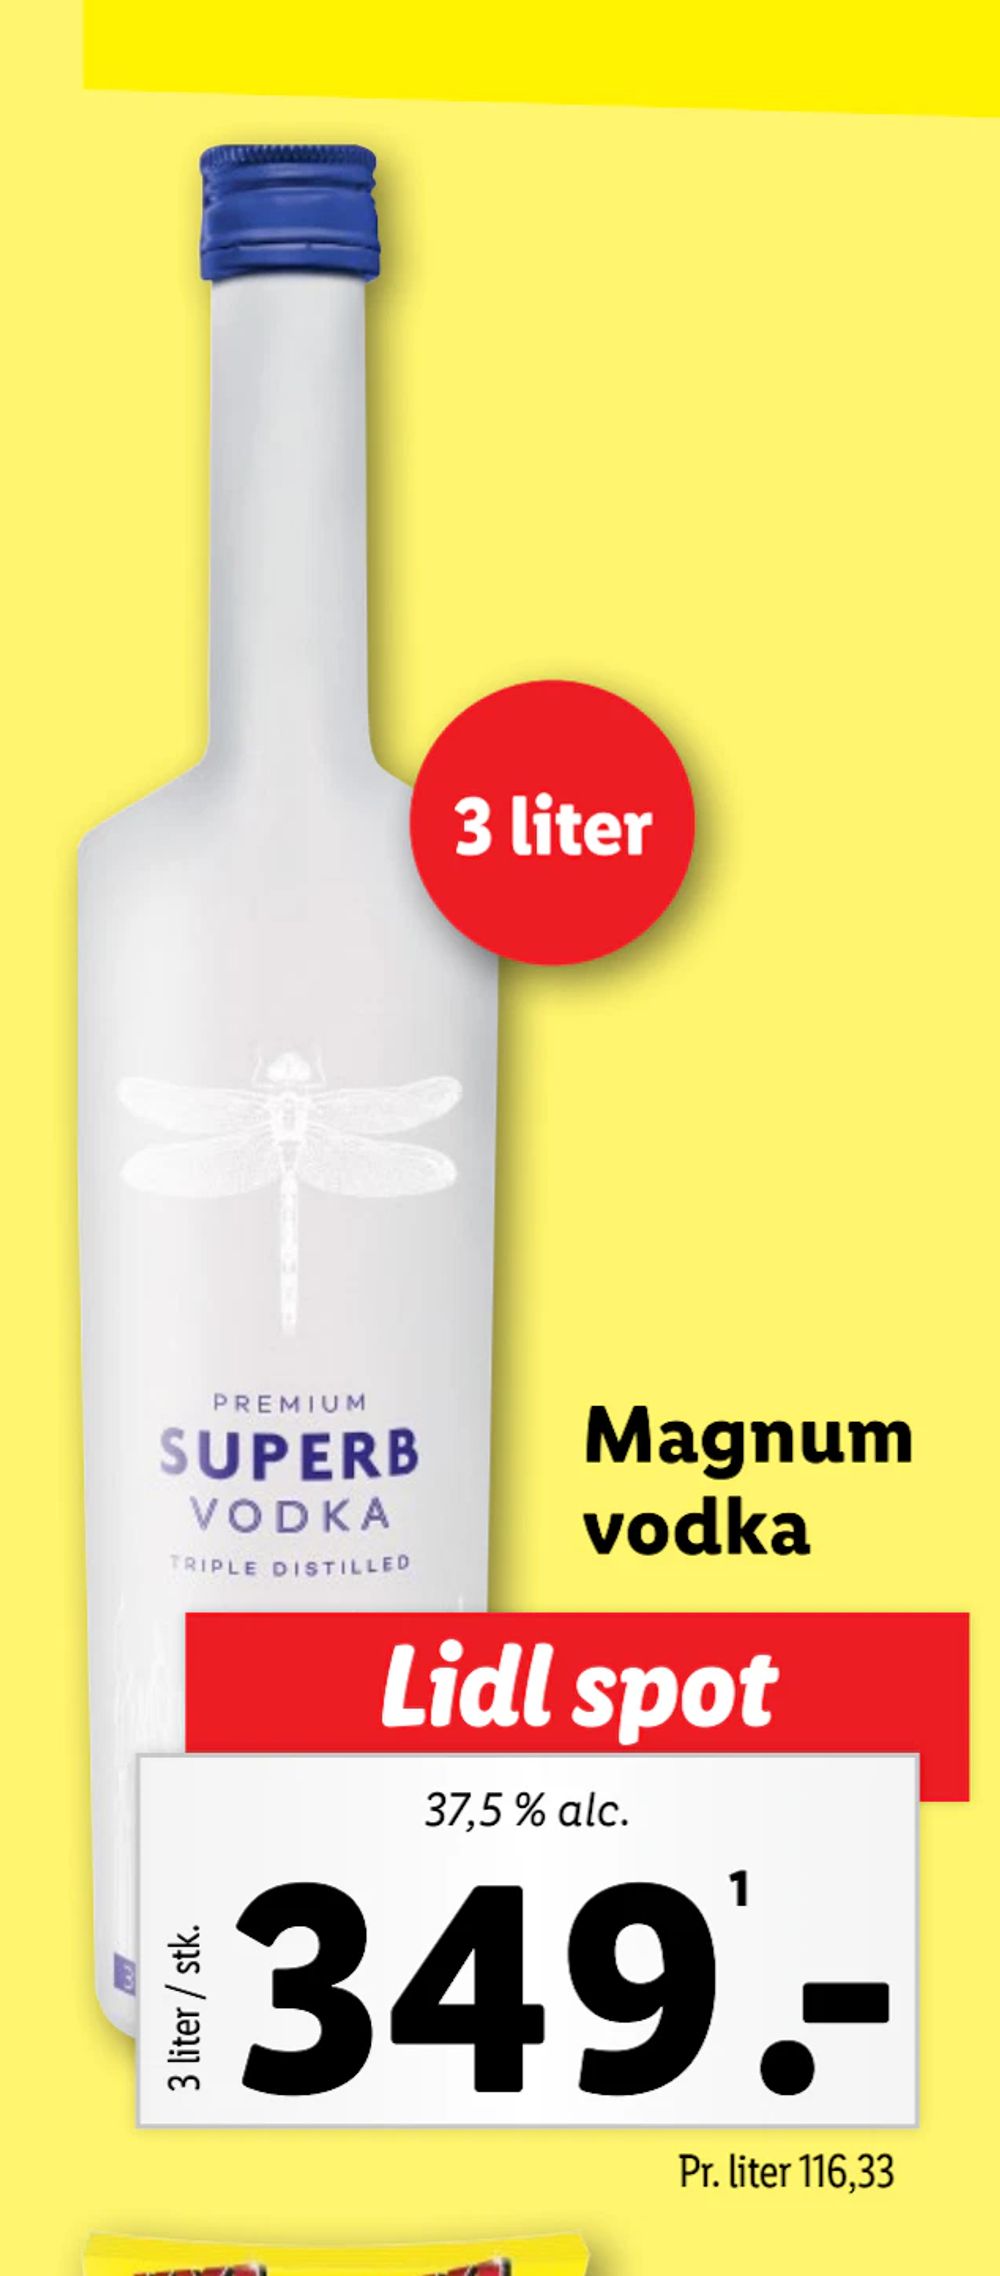 Tilbud på Magnum vodka fra Lidl til 349 kr.